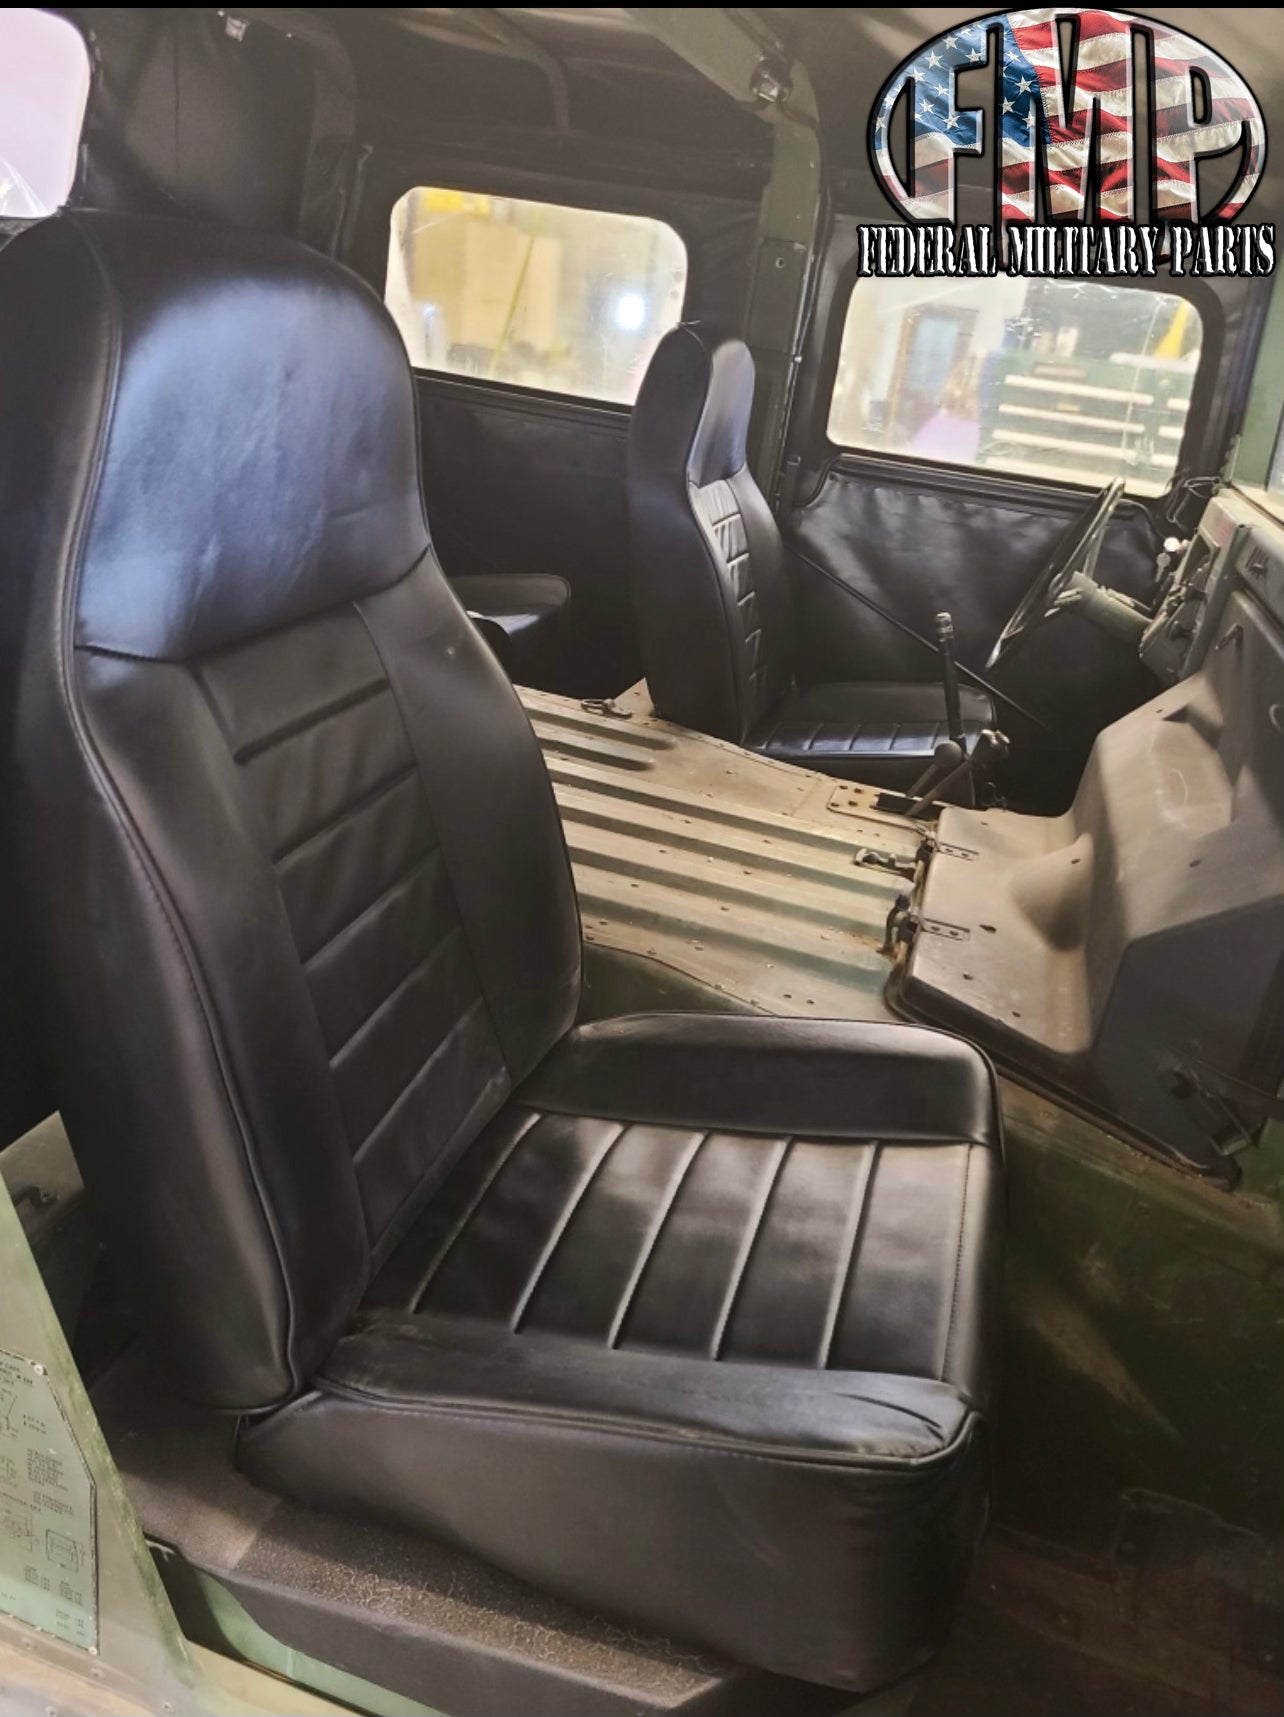 Neue Humvee-Sitz HMMWV-Sitze für Ihr Militärfahrzeug - Single, Paar od –  Federal Military Parts (763) 310-9340